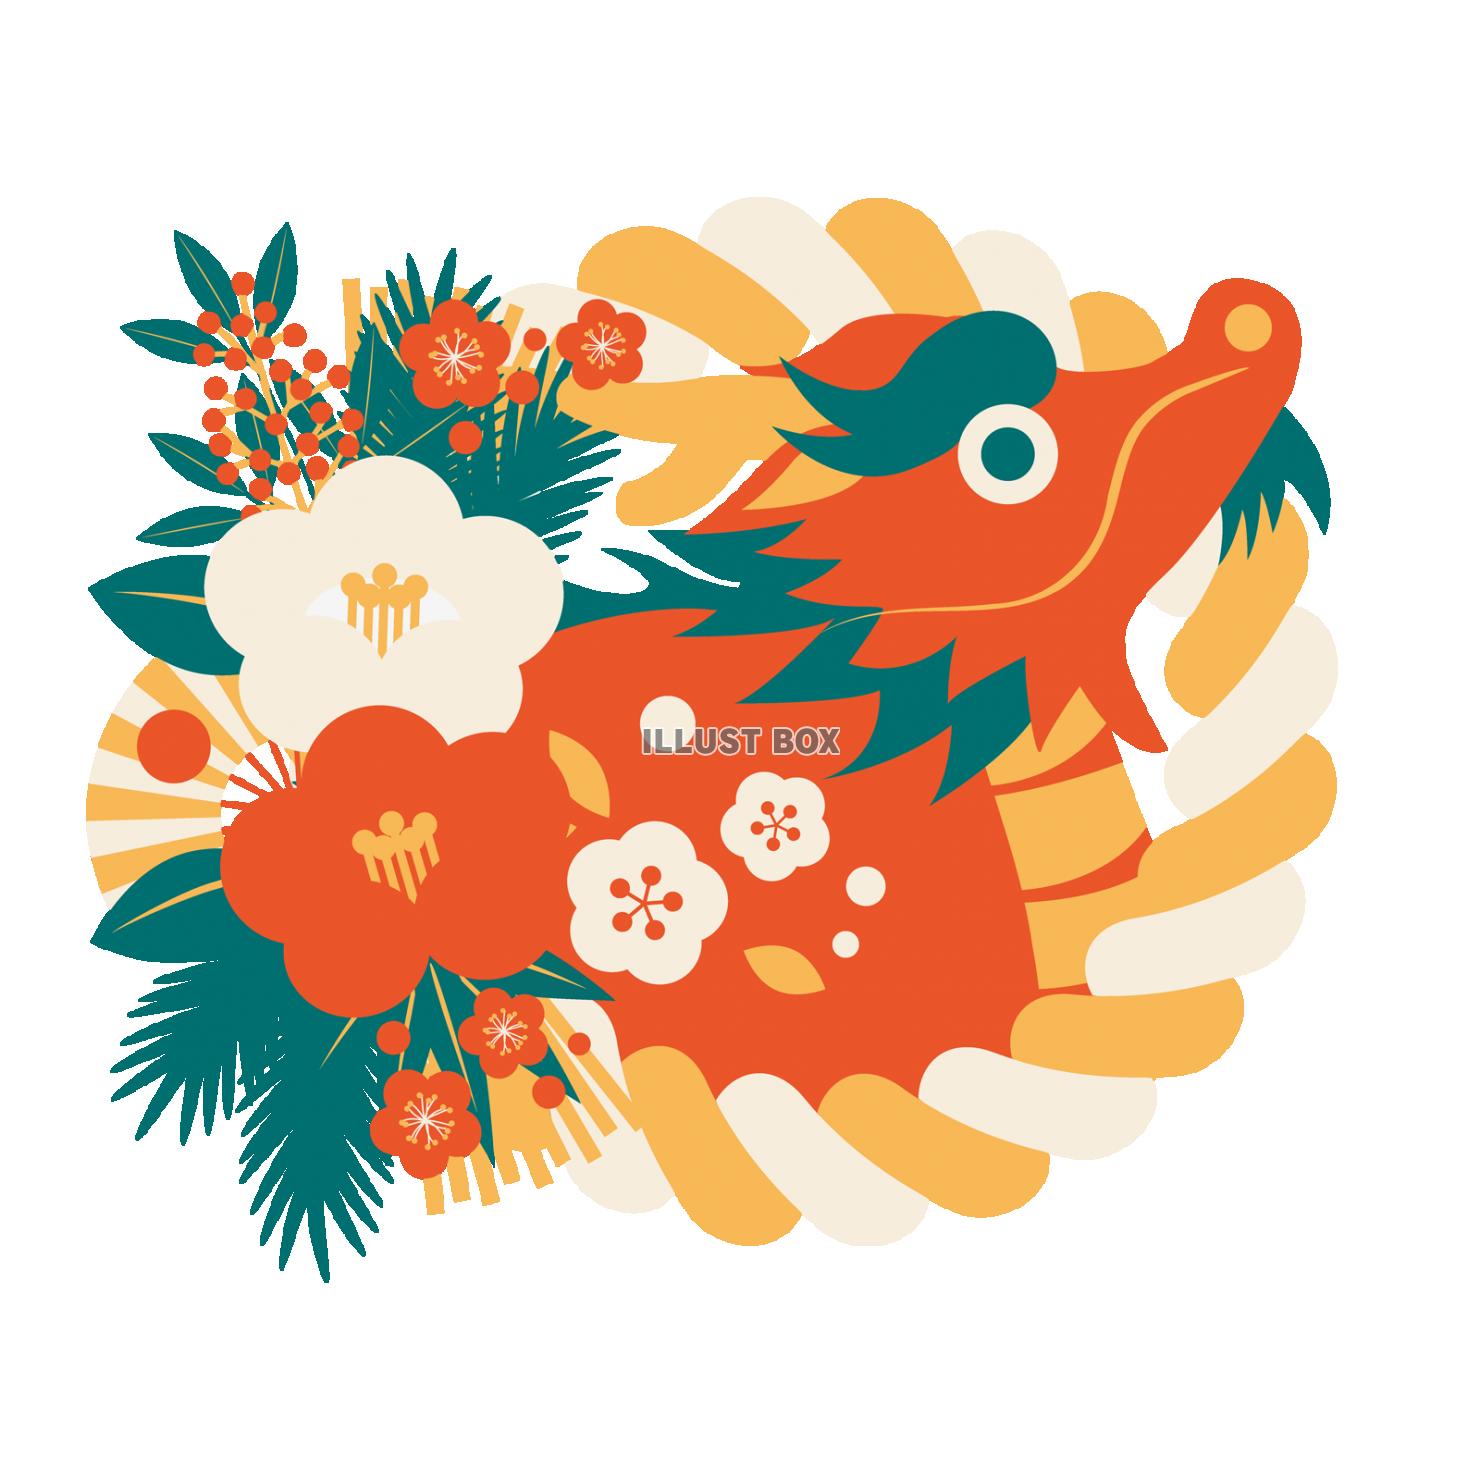 アレンジしめ飾りに朱色辰の辰年アイコン・4色レトロカラー